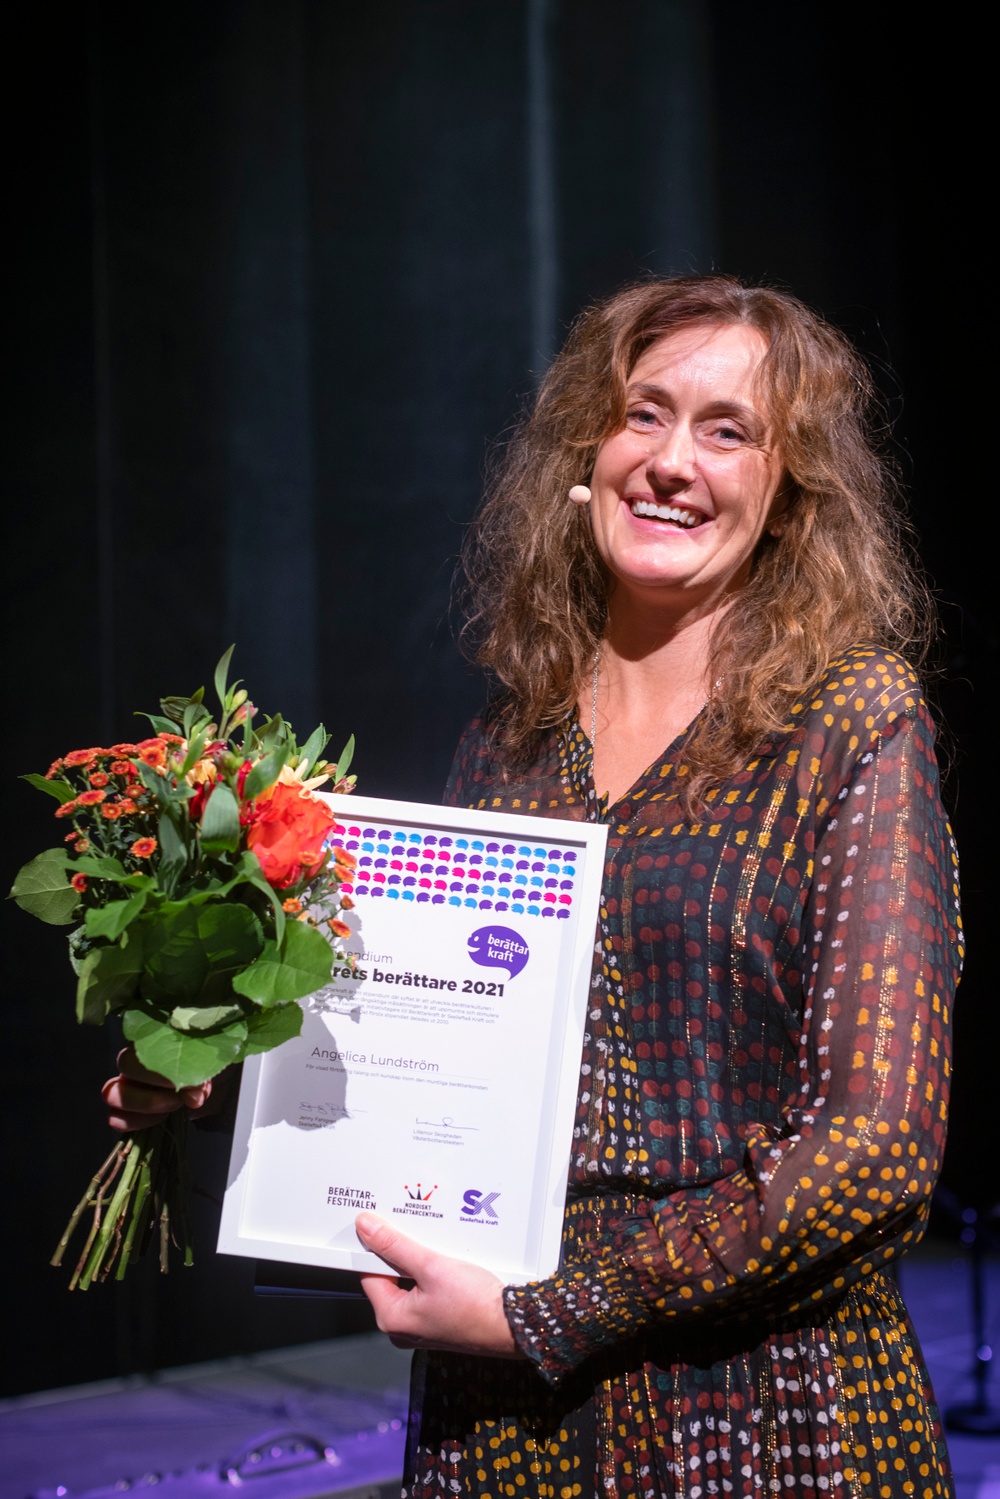 Angelica Lundström, Årets berättare 2021 och Berättarkraft-stipendiat. Foto: Patrick Degerman.